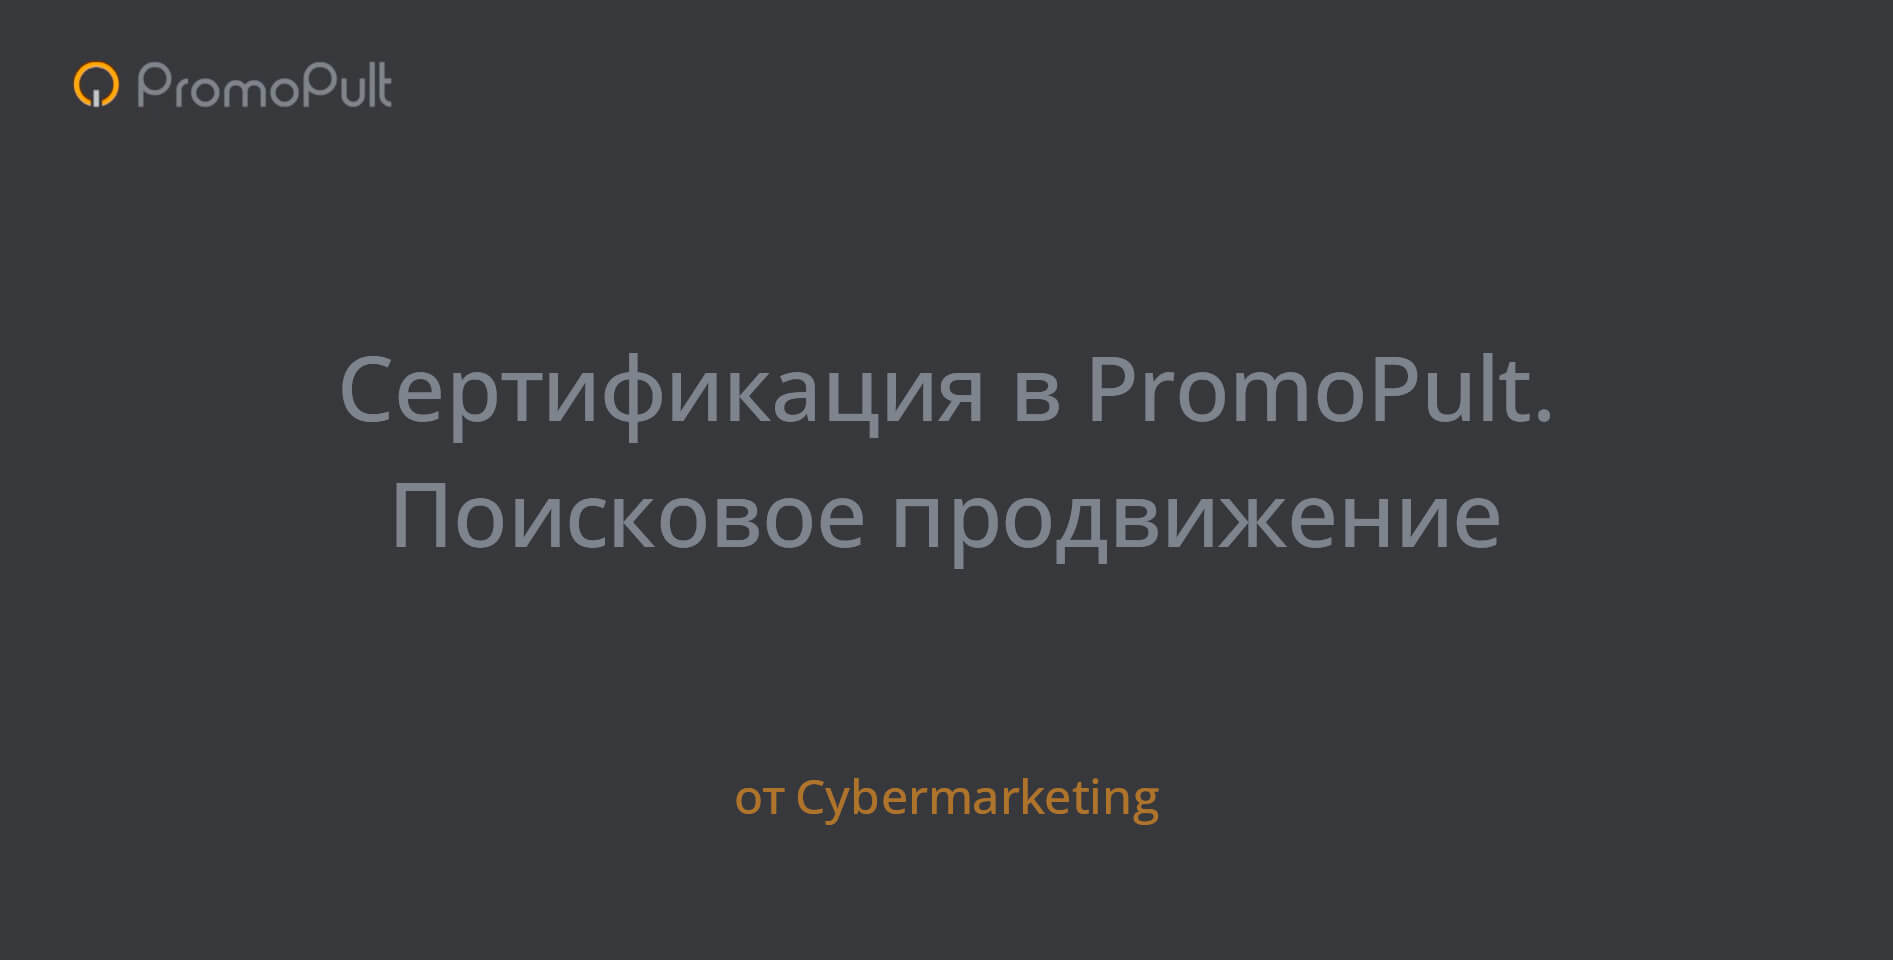 Cybermarketing — Сертификация в PromoPult. Поисковое продвижение